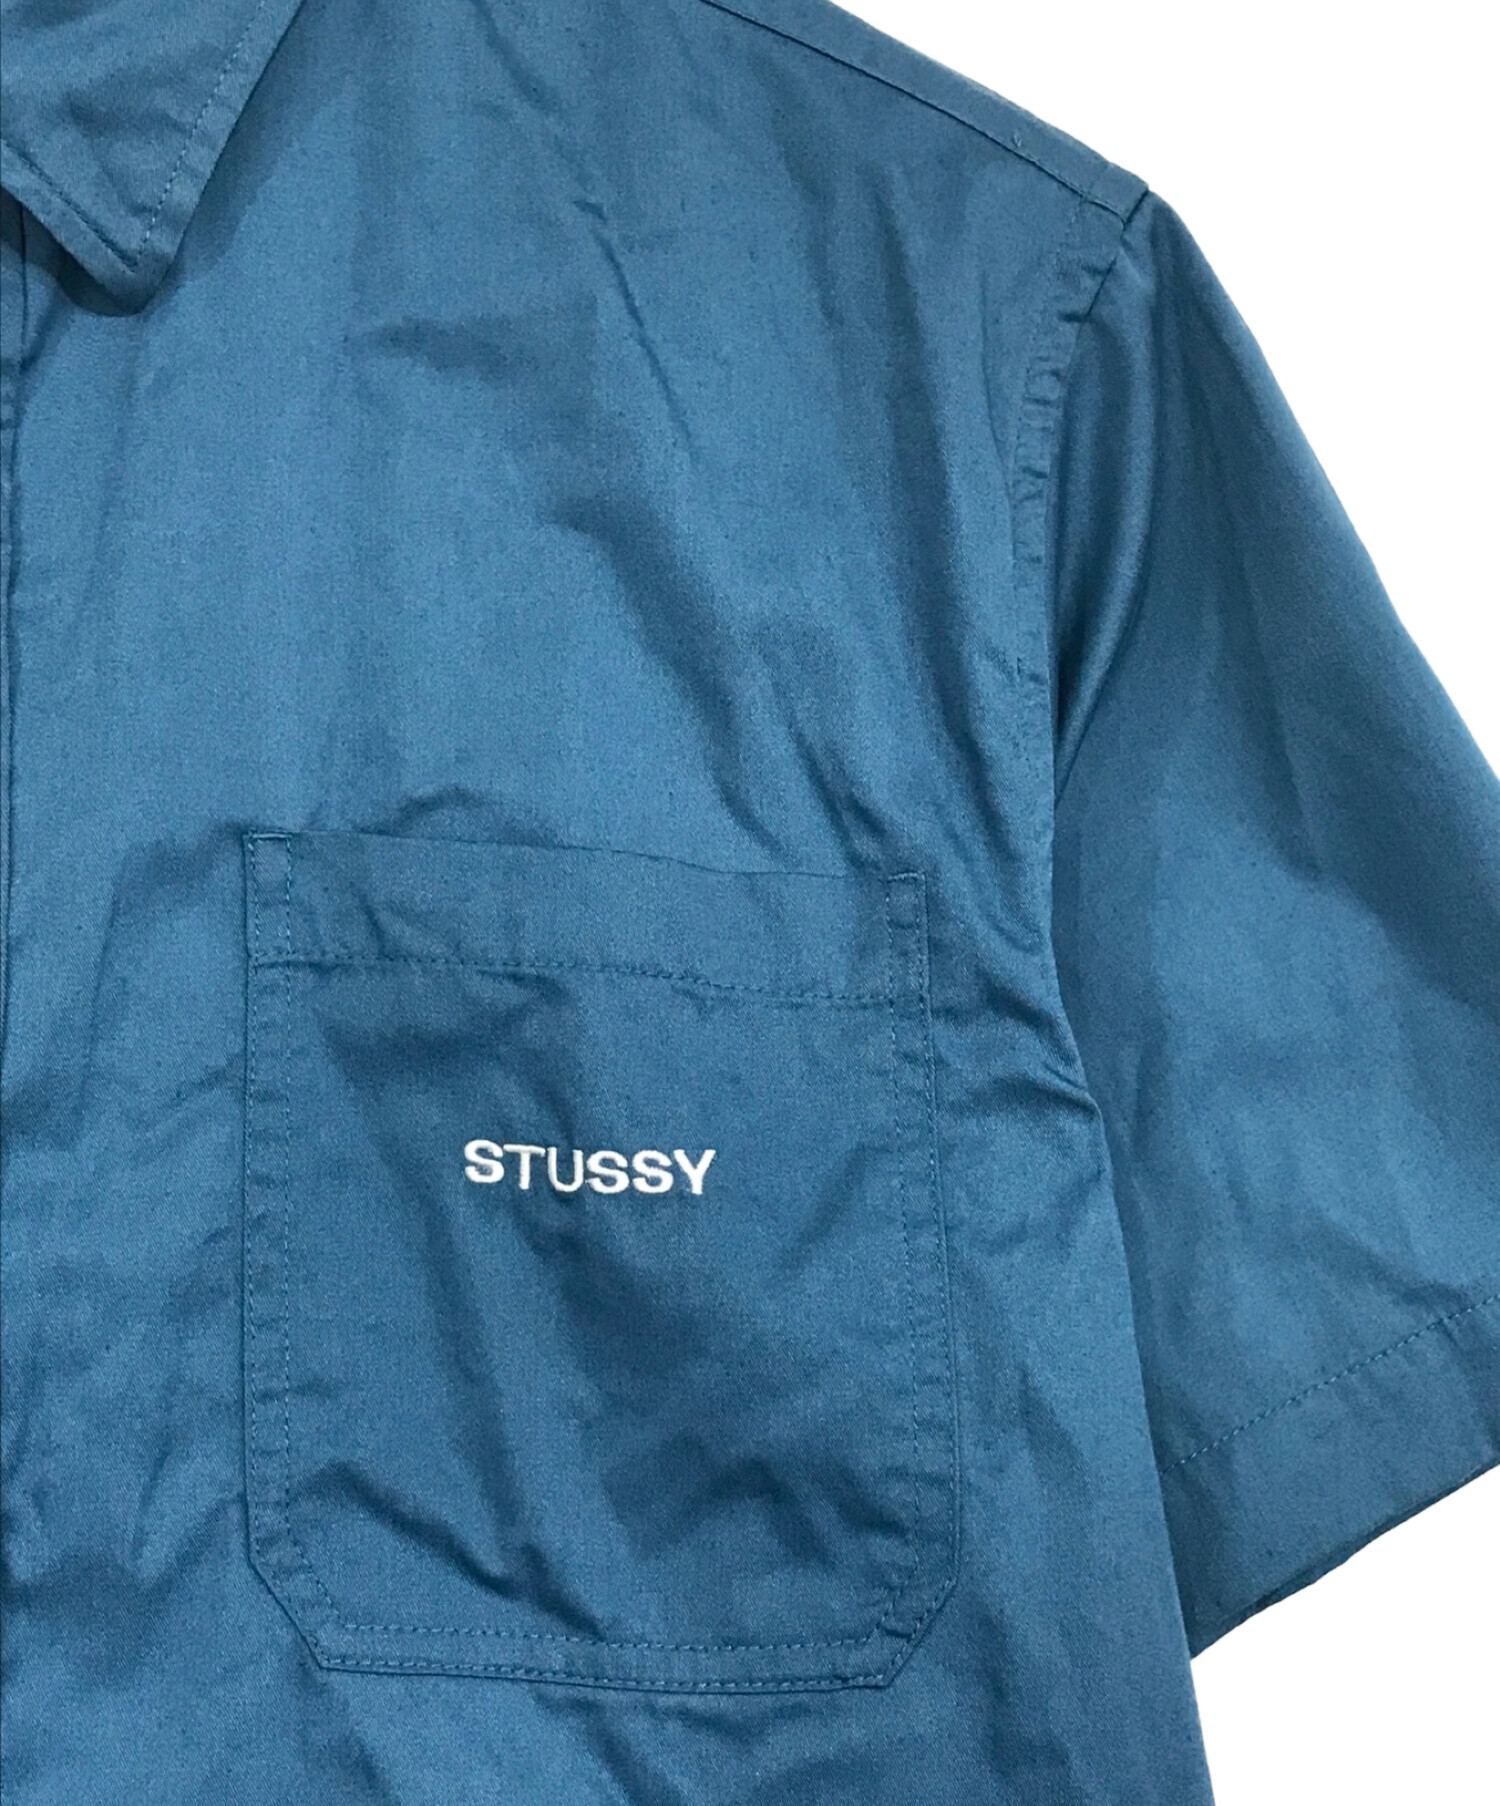 STUSSY ステューシー シャツ サイズ:XL 00s フラワー柄 コットン ボタン 長袖 シャツ ベージュ系 トップス カジュアルシャツ ブランド アーカイブ y2k 【メンズ】